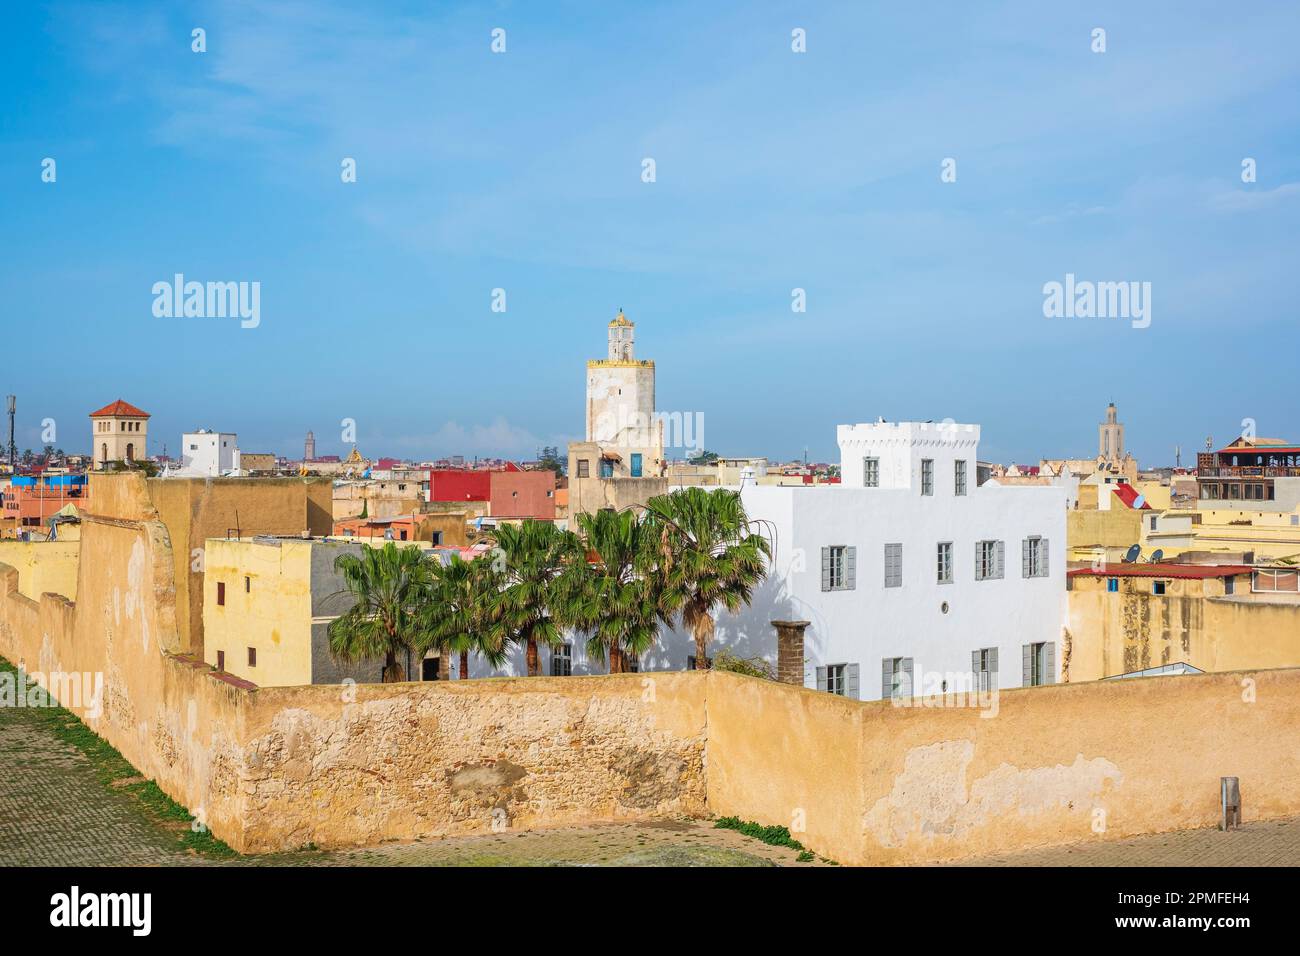 Marocco, El Jadida, la città fortificata portoghese di Mazagan classificato come patrimonio dell'umanità dell'UNESCO, costruito dai portoghesi all'inizio del 16th ° secolo, i bastioni della cittadella Foto Stock